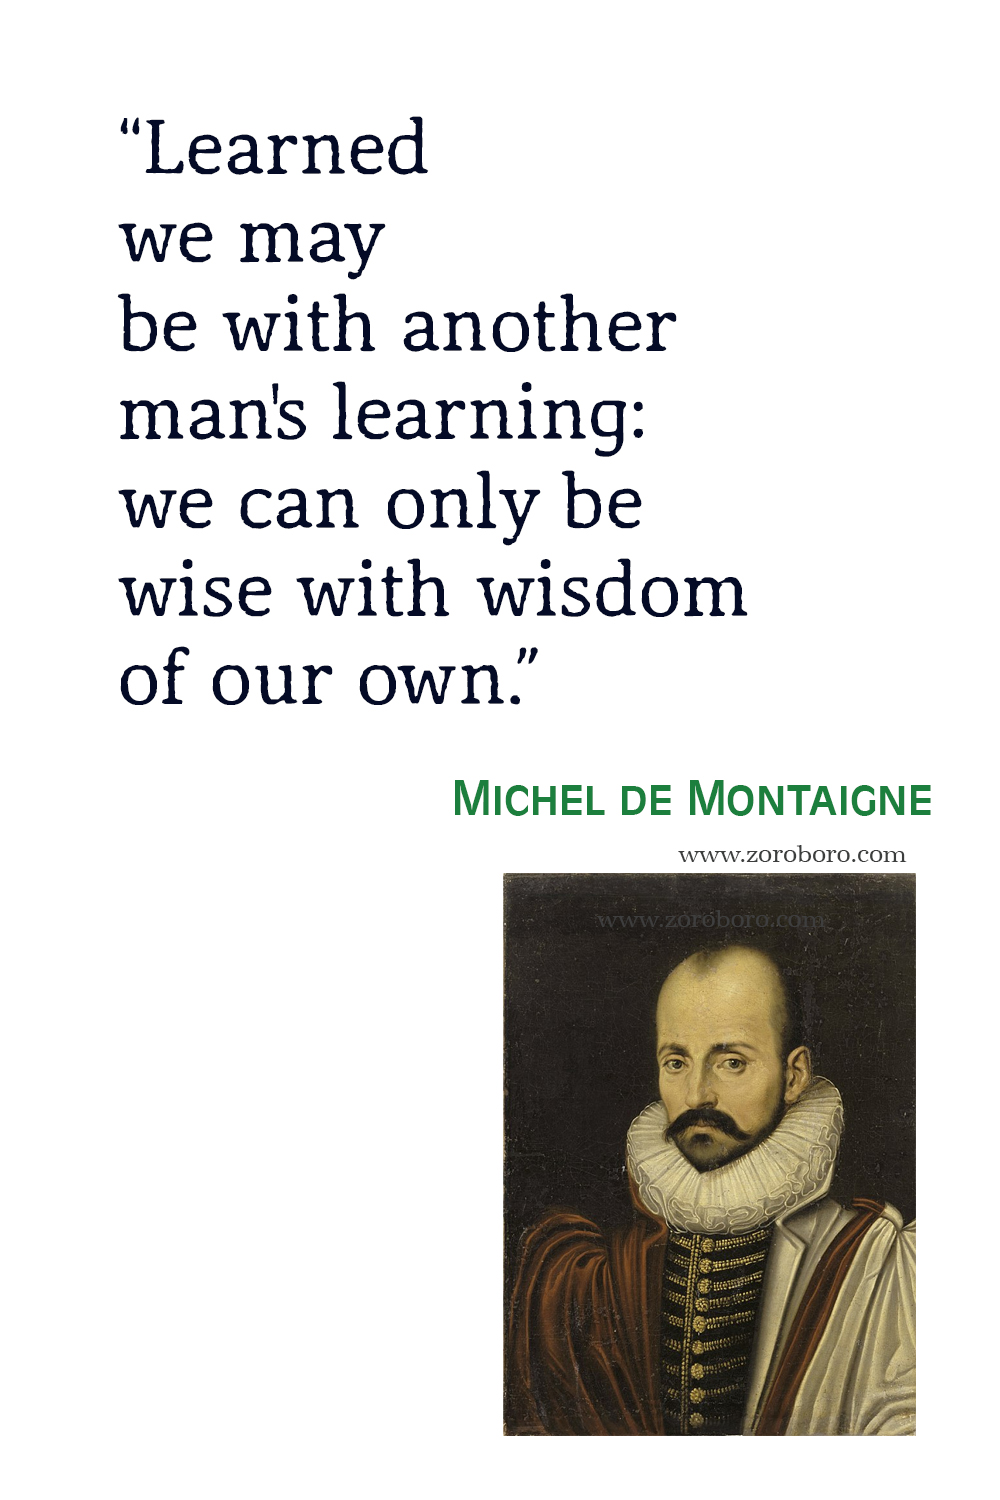 Michel de Montaigne Quotes, Michel de Montaigne Poems, Michel de Montaigne Poetry, Michel de Montaigne Books Quotes